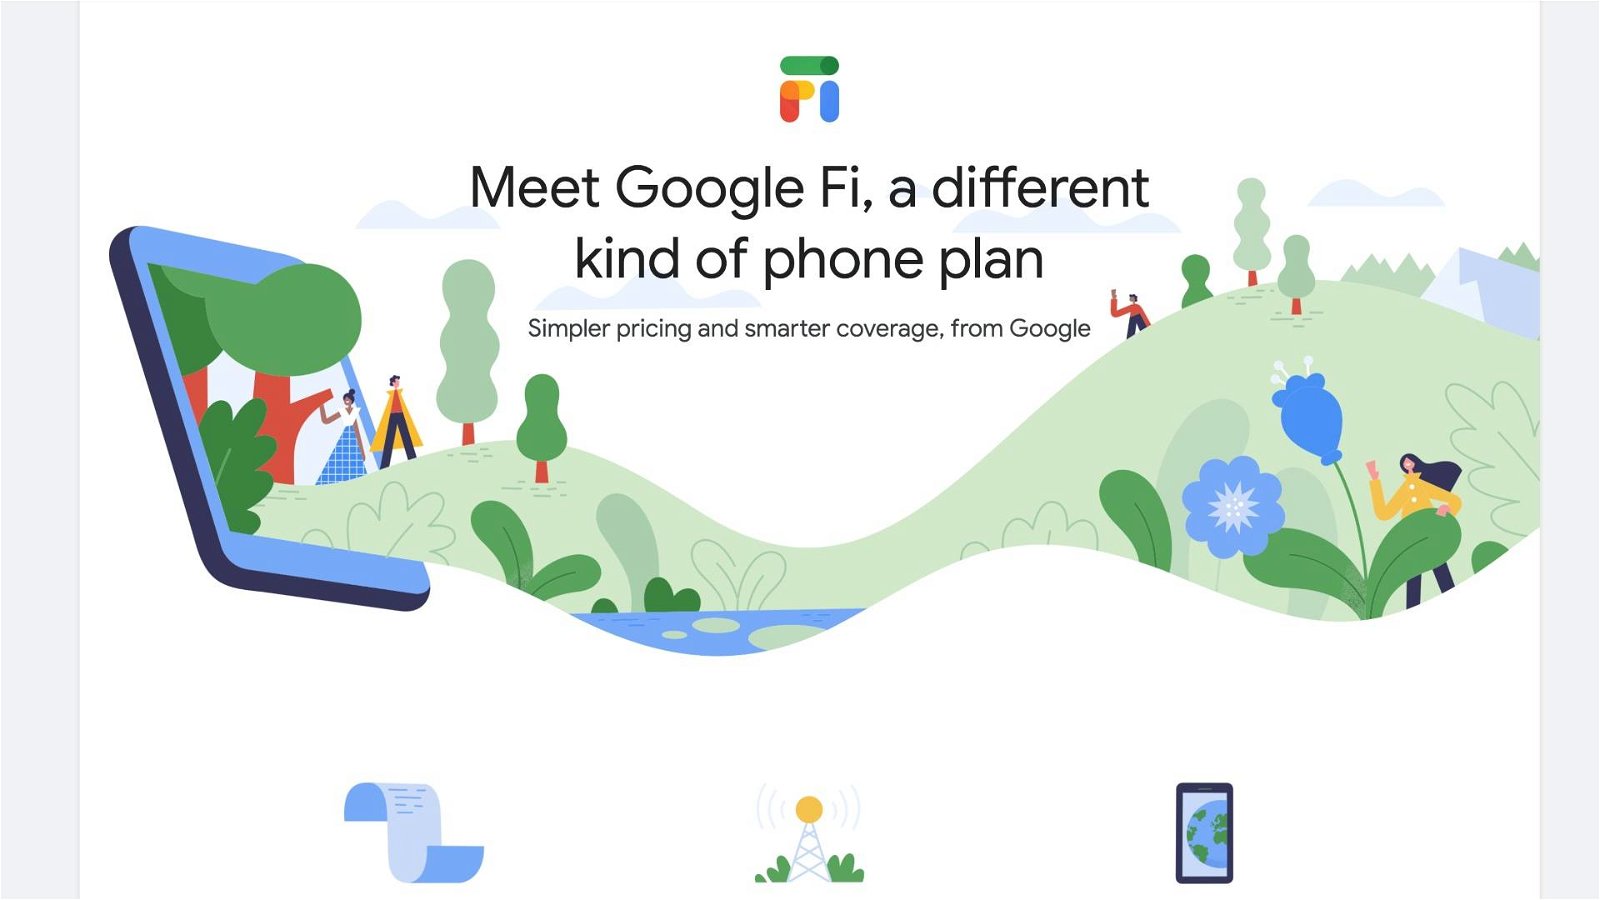 Immagine di Google Fi registrato come marchio in Europa: un operatore mobile virtuale che potrebbe accendere la competizione